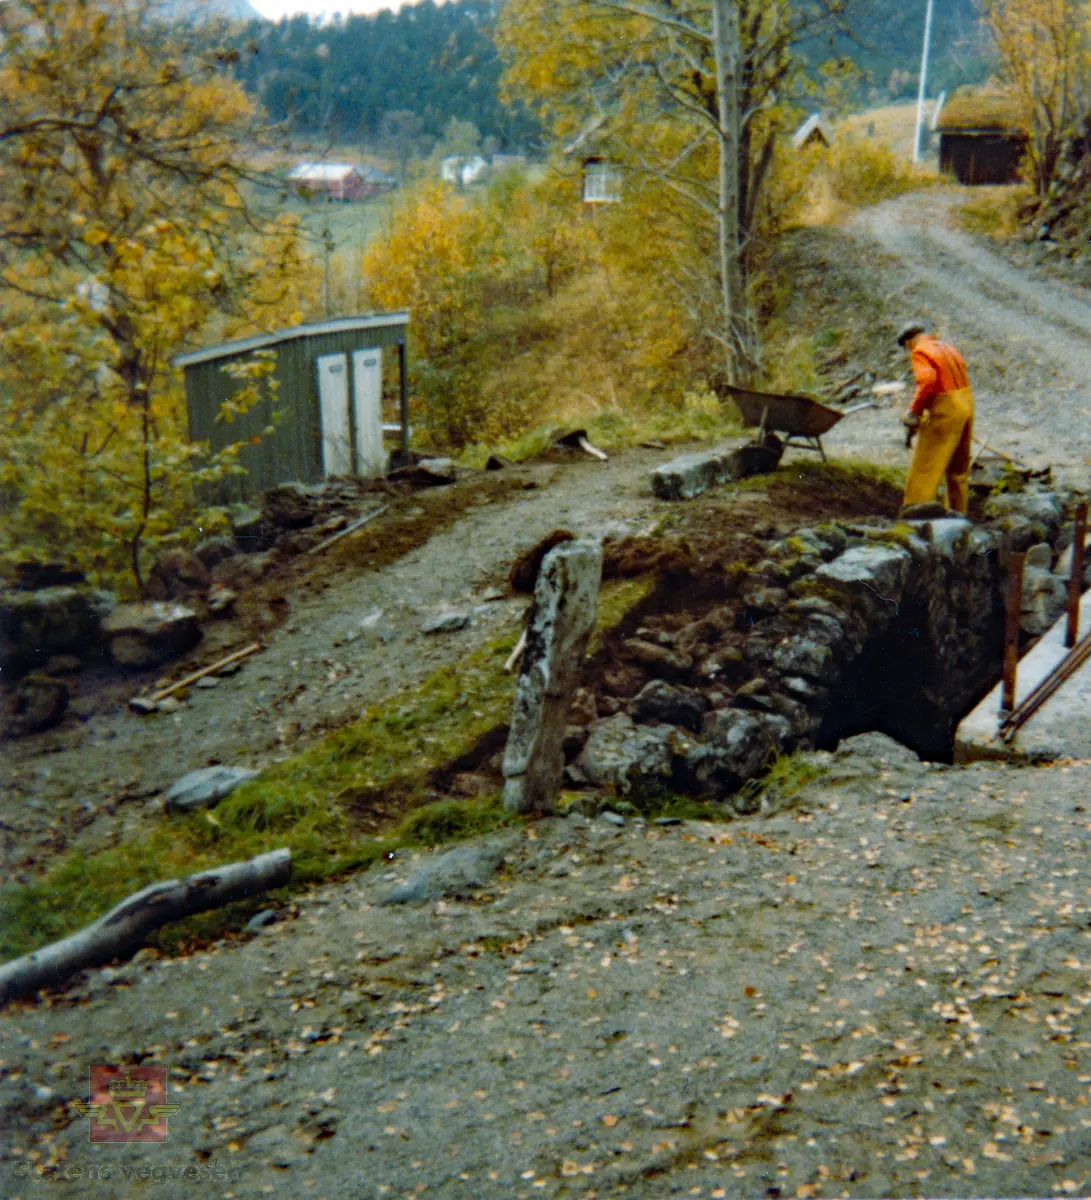 Gjerset steinhvelbru, som ligger like overfor fylkesveg 64 i Gjerdsetbygda i Rauma kommune. Brua ble bygd i 1833, ombygd i 1850 og restaurert i 1978. Brua ligger i dag på en privat veg som går til Gjerdset turistsenter.

Motivet viser brua under restaurering i 1978